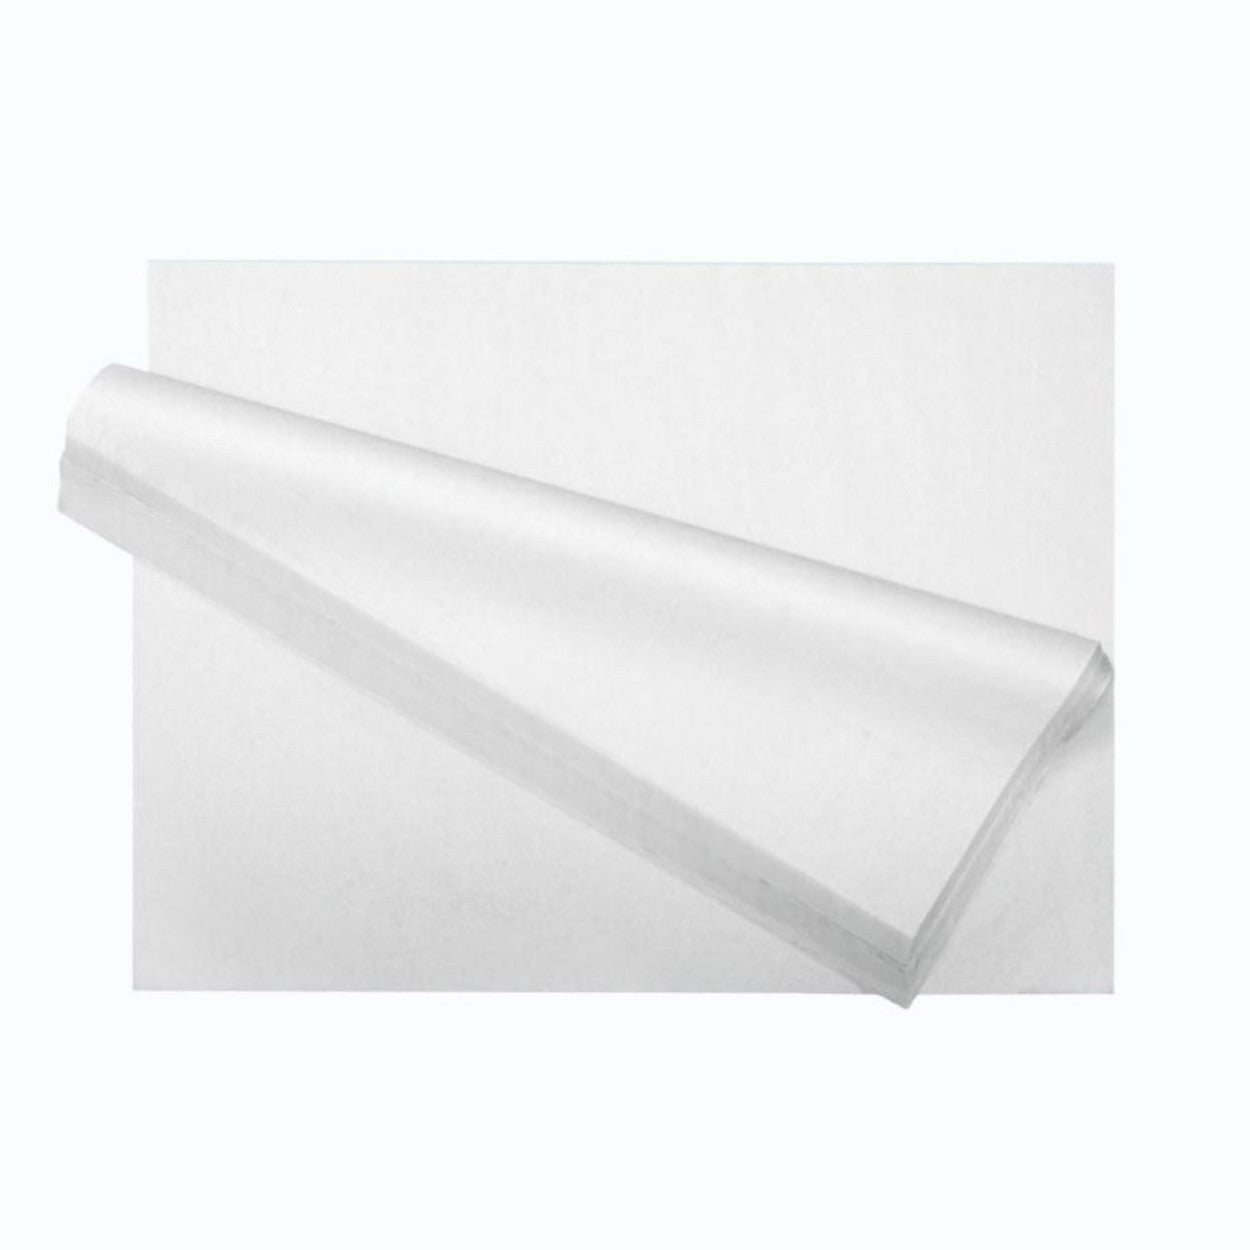 White Tissue Paper 18 x 27 Bulk